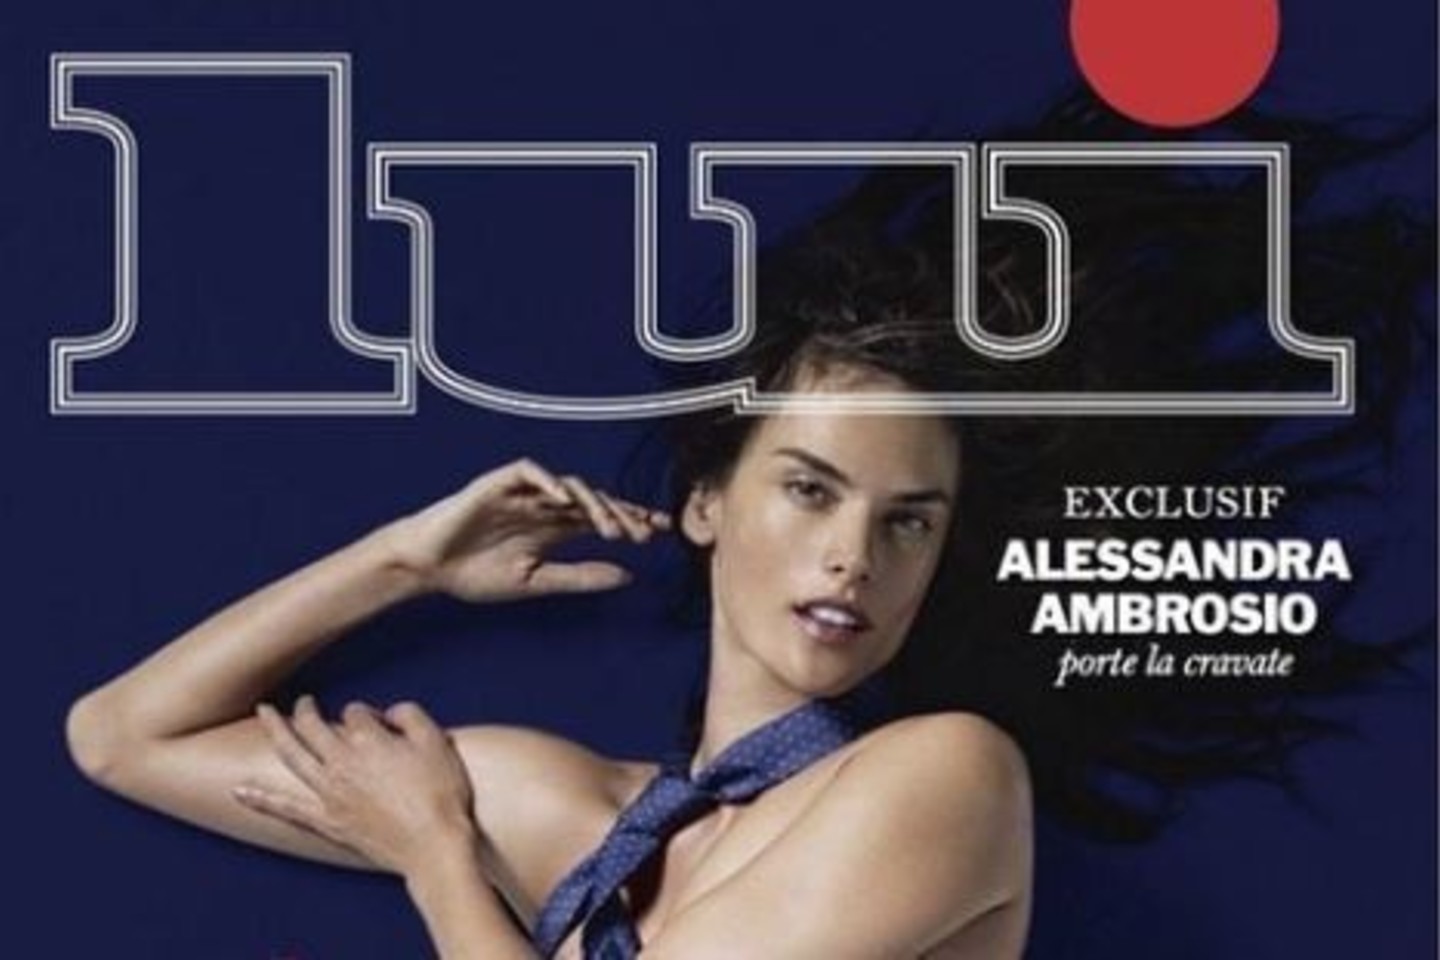 Alessandra Ambrosio žurnalo viršeliui pozavo visiškai nuoga.<br>„Instagram“ nuotr.